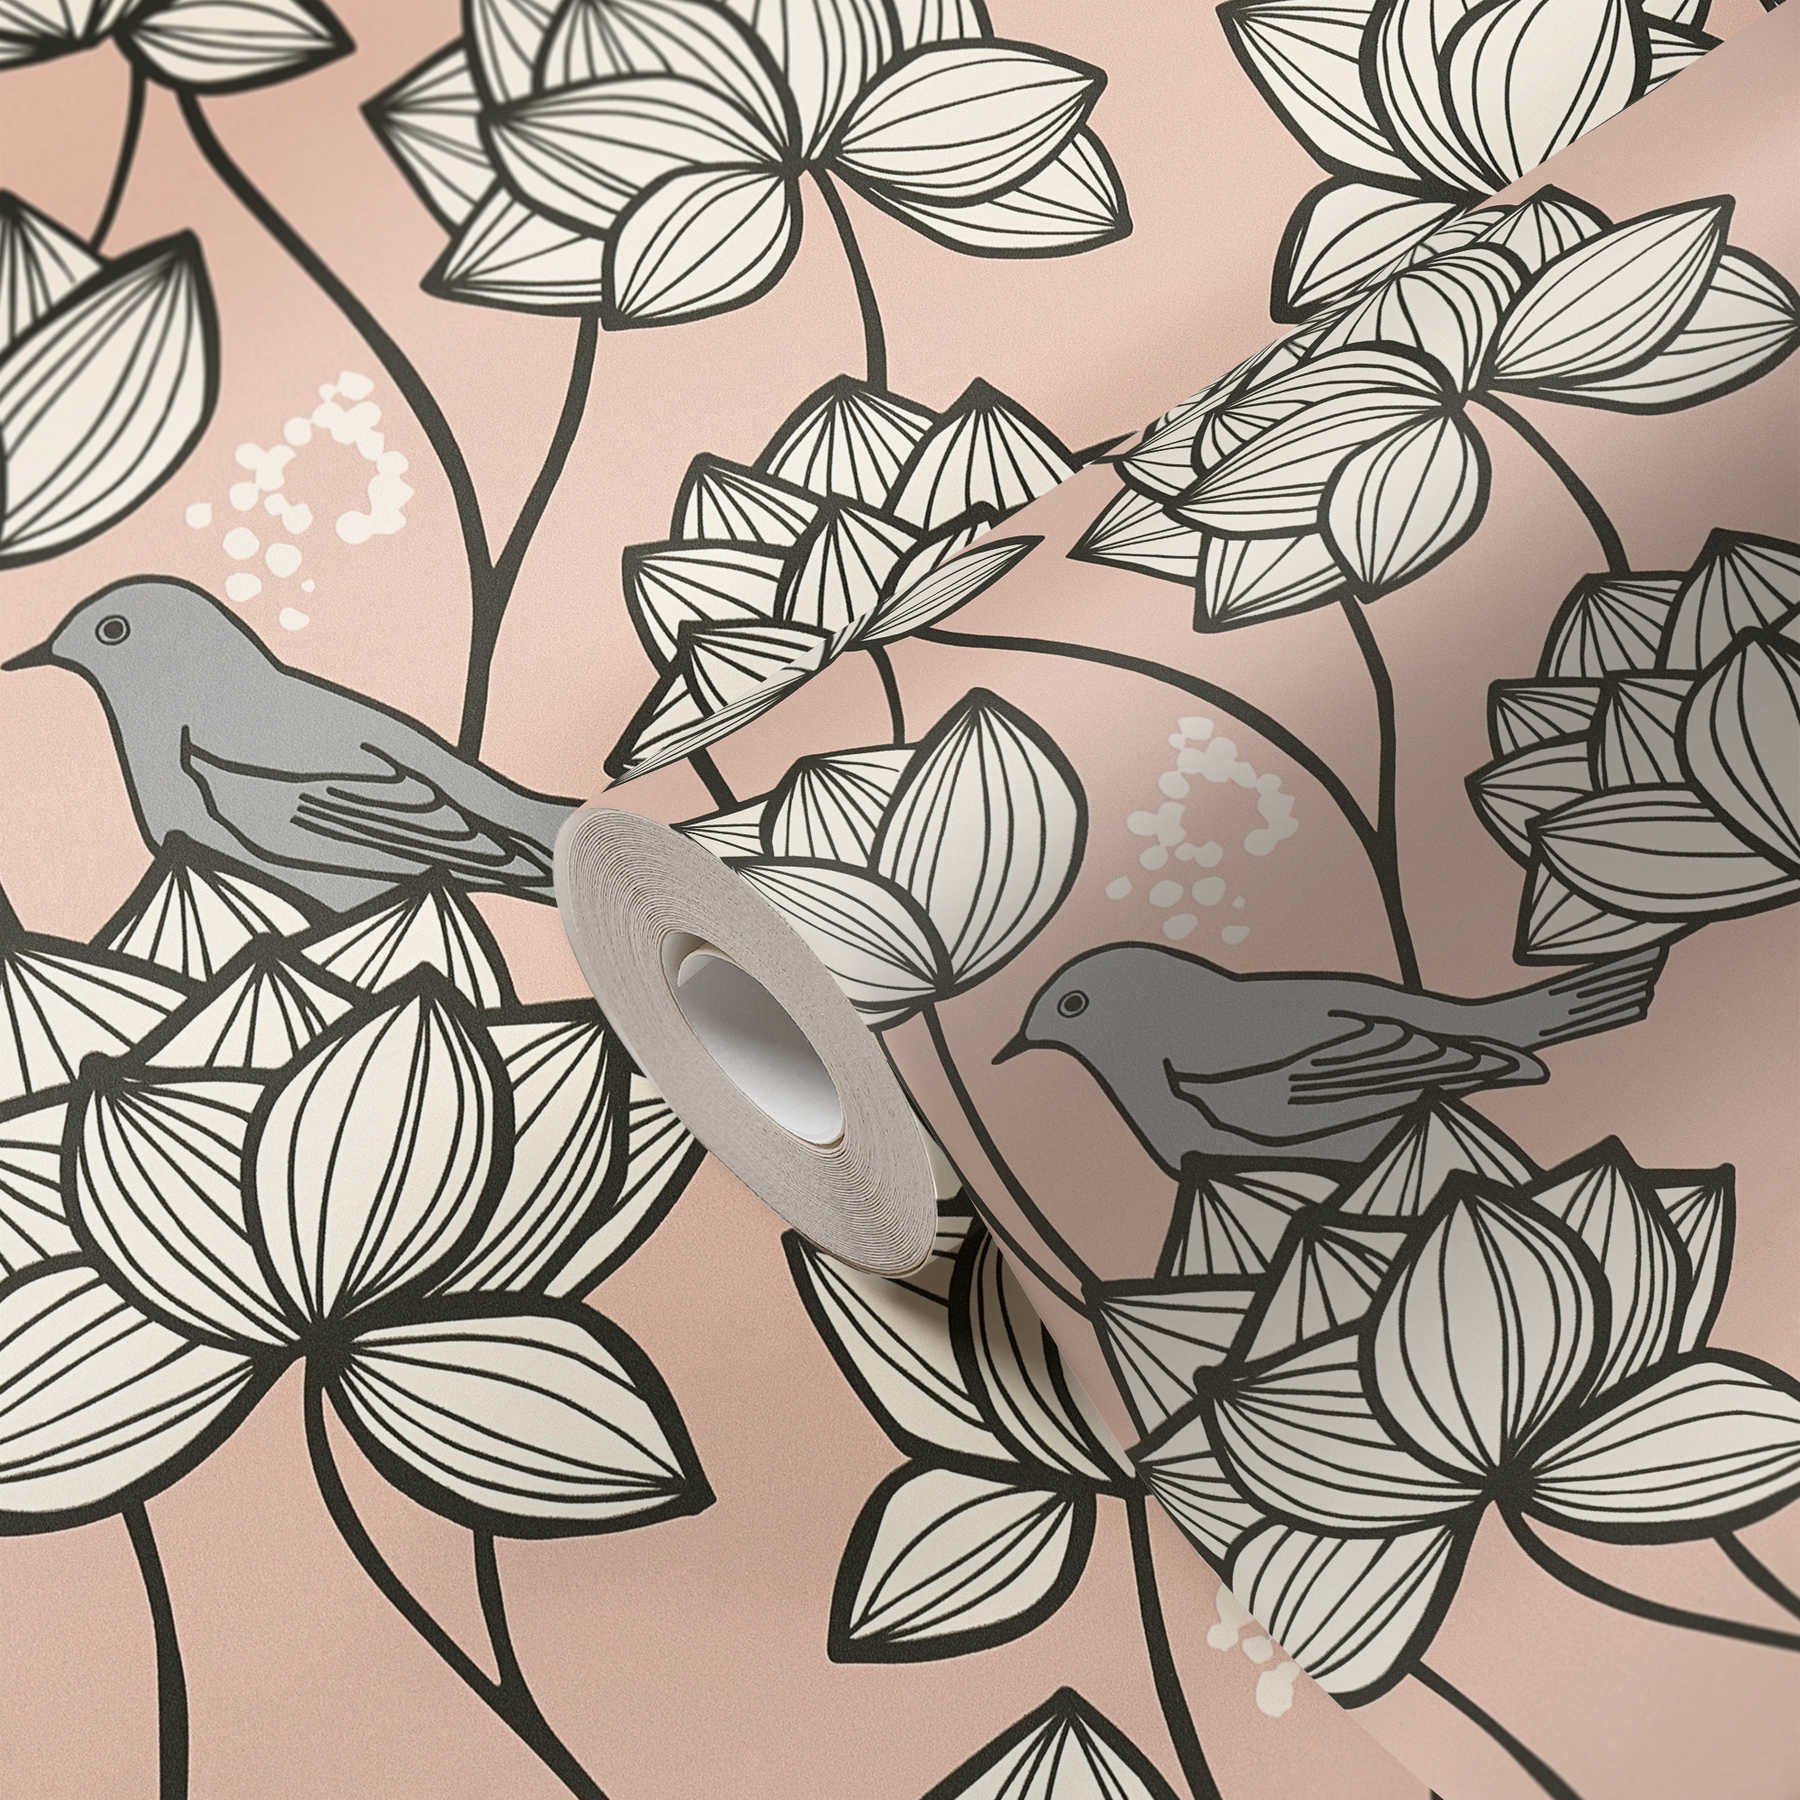             Papier peint intissé Fleurs rinceaux avec oiseaux style Line Art - gris, rose
        